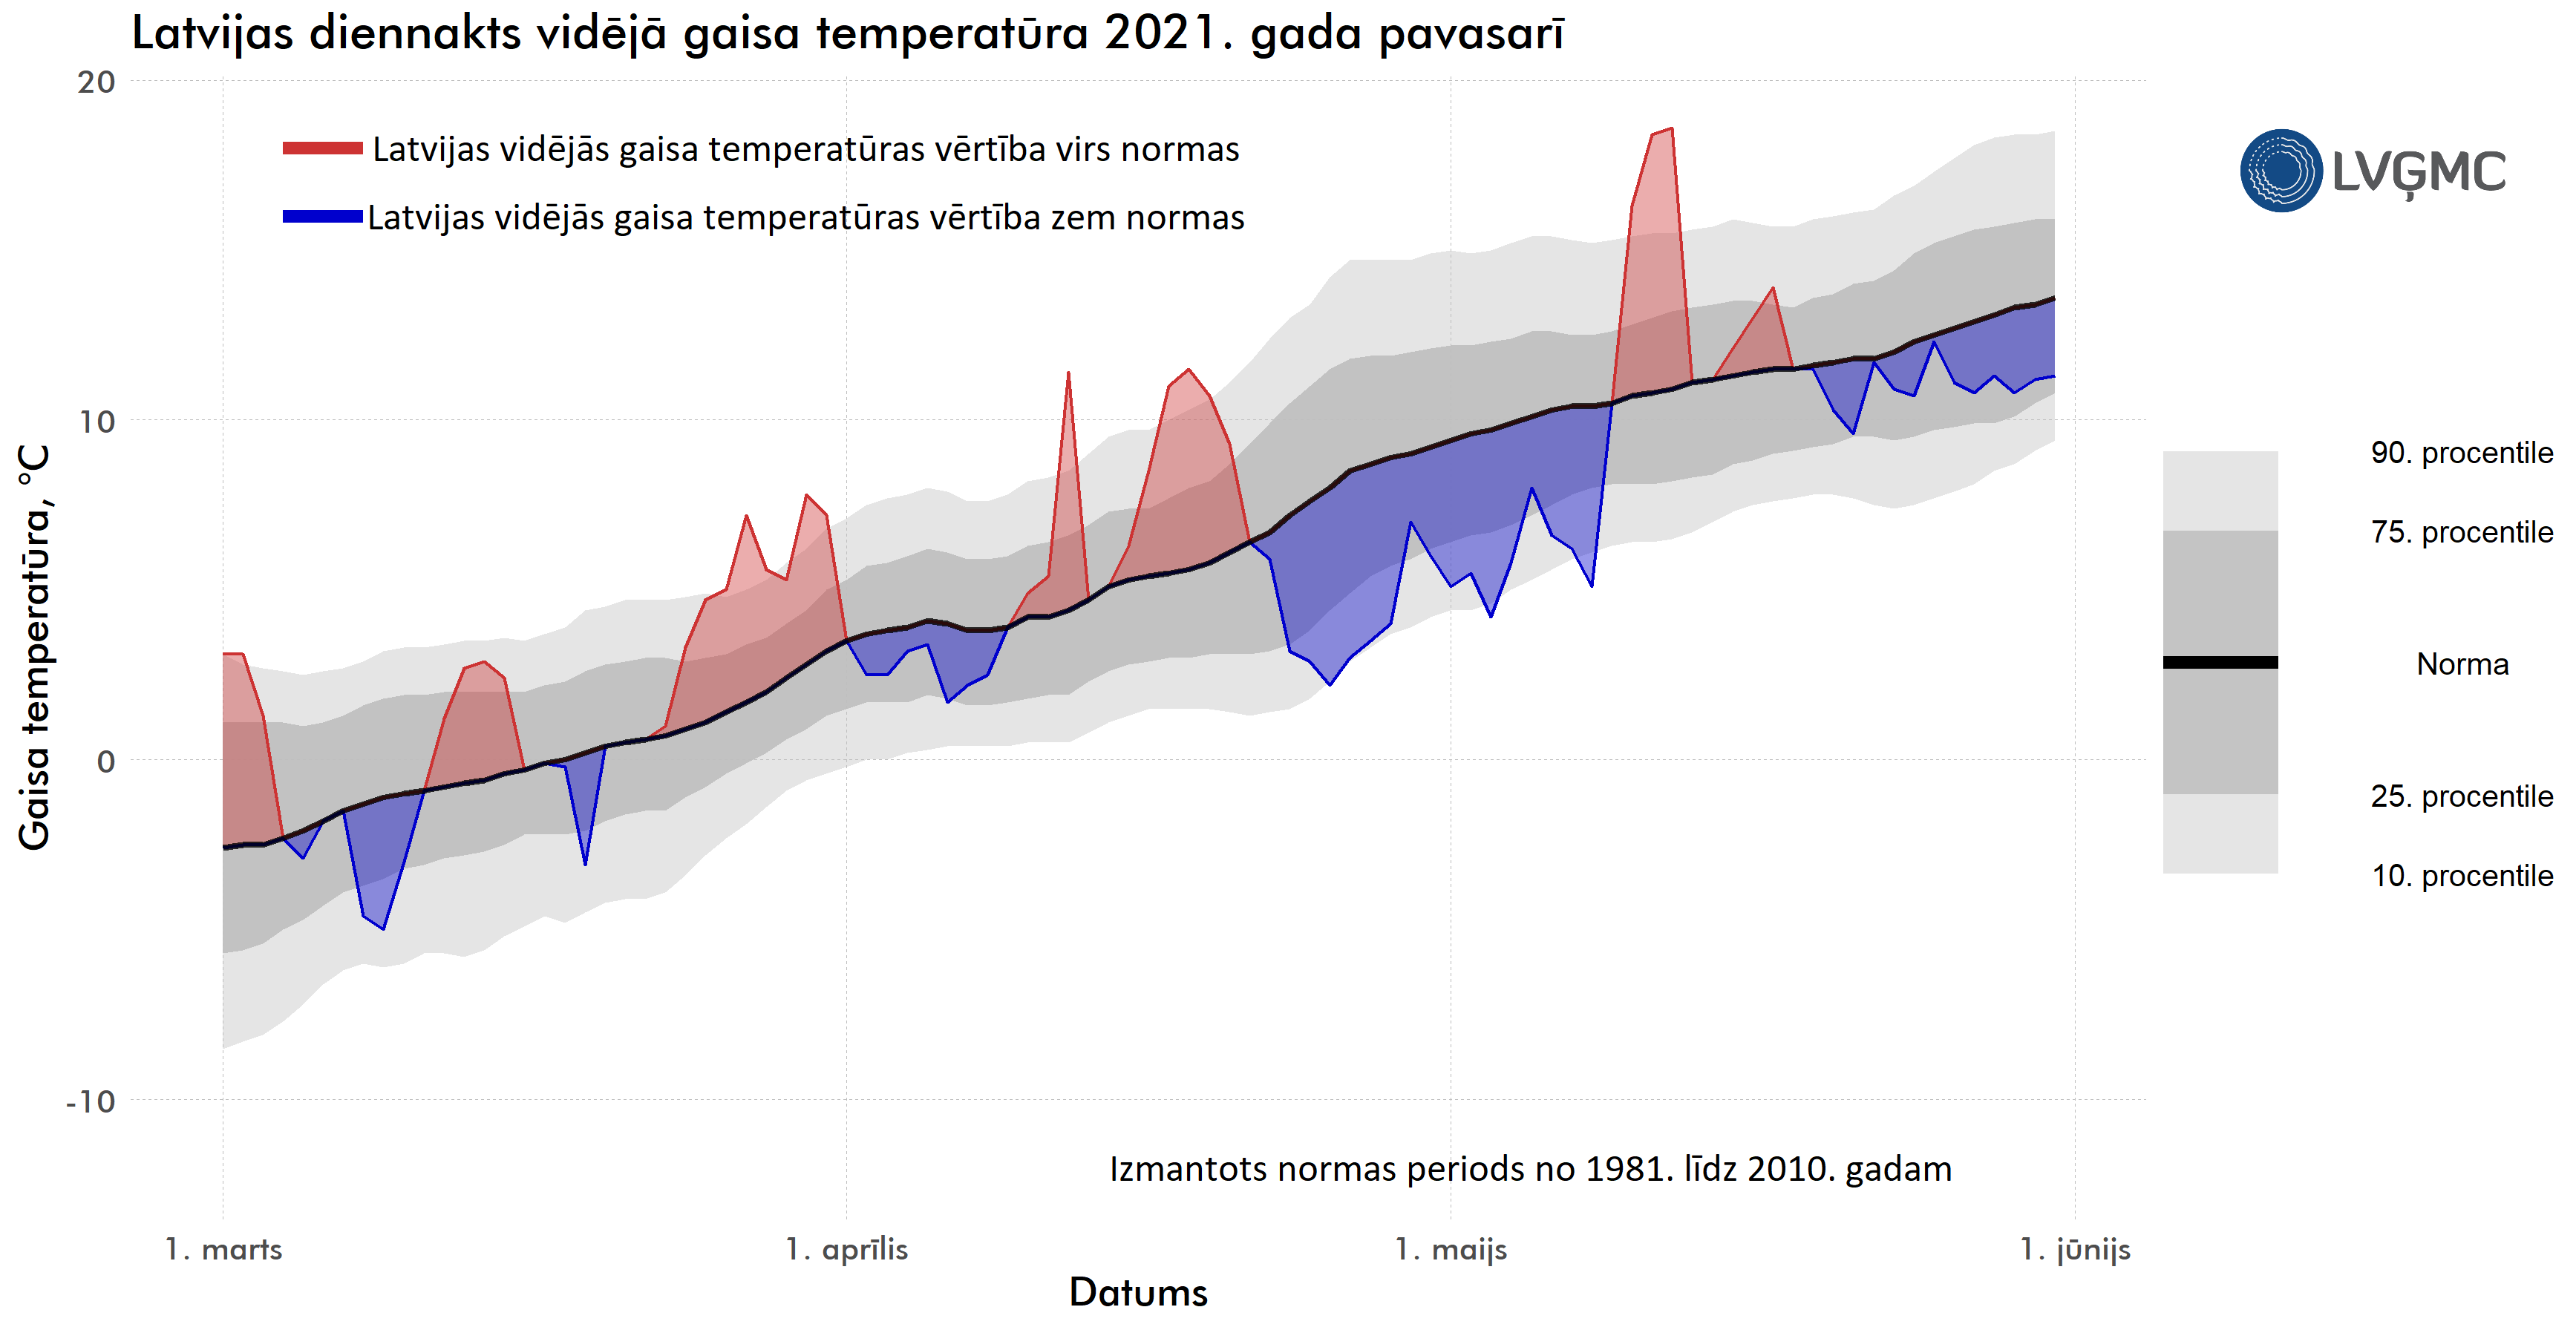 Gaisa temperatūras novirze laikā no normas 2021. gada pavasarī, °C